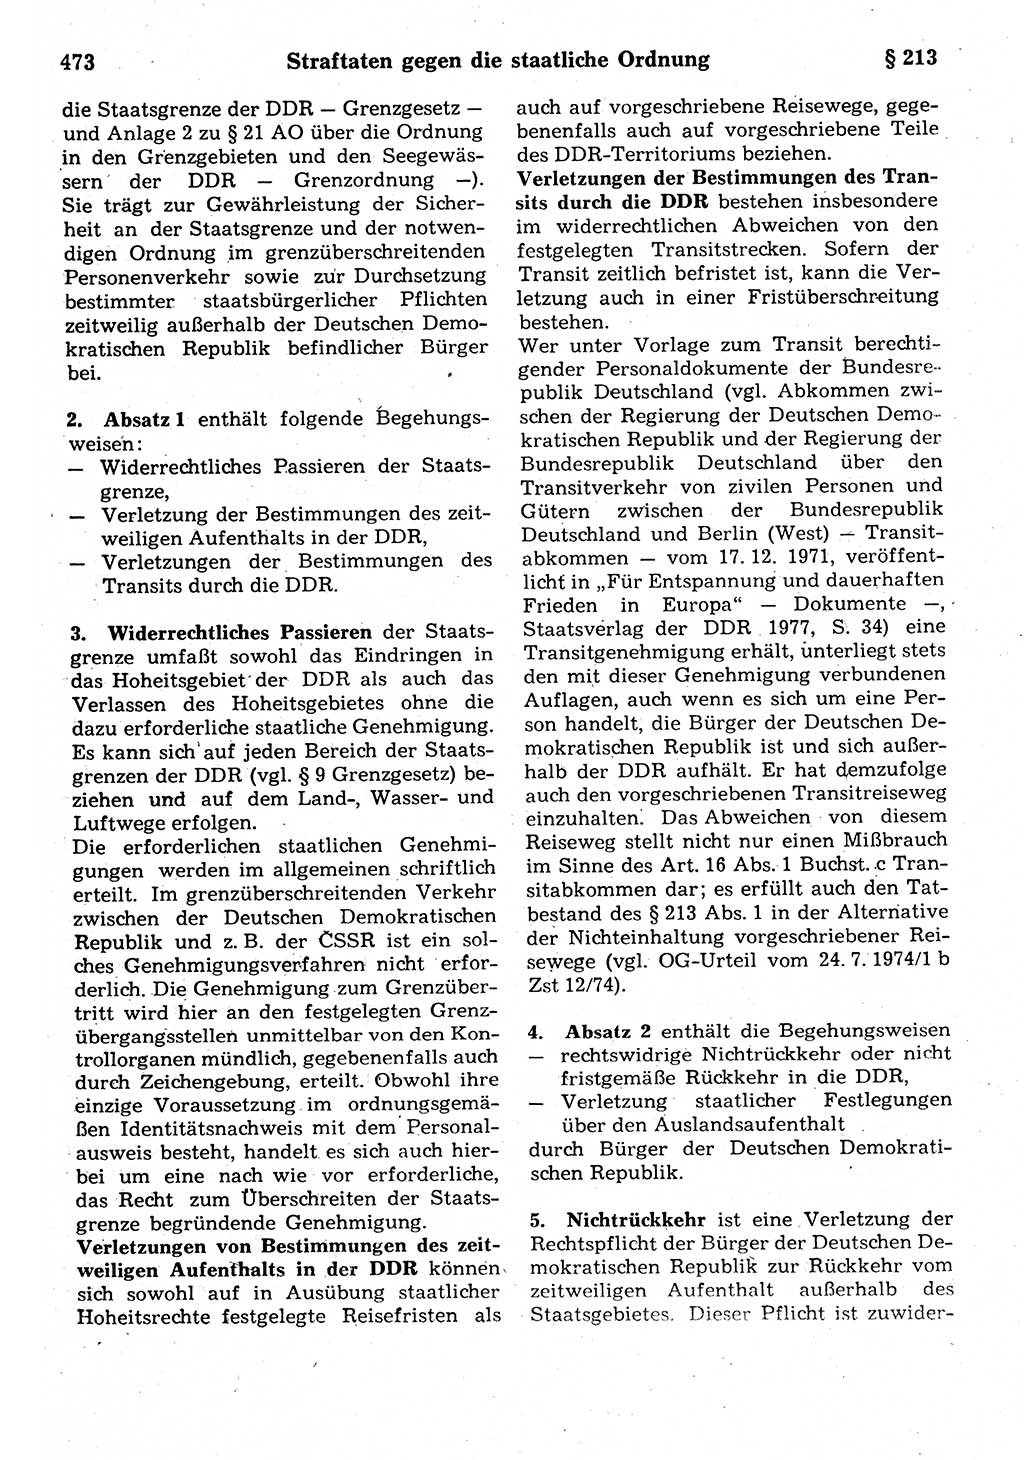 Strafrecht der Deutschen Demokratischen Republik (DDR), Kommentar zum Strafgesetzbuch (StGB) 1987, Seite 473 (Strafr. DDR Komm. StGB 1987, S. 473)